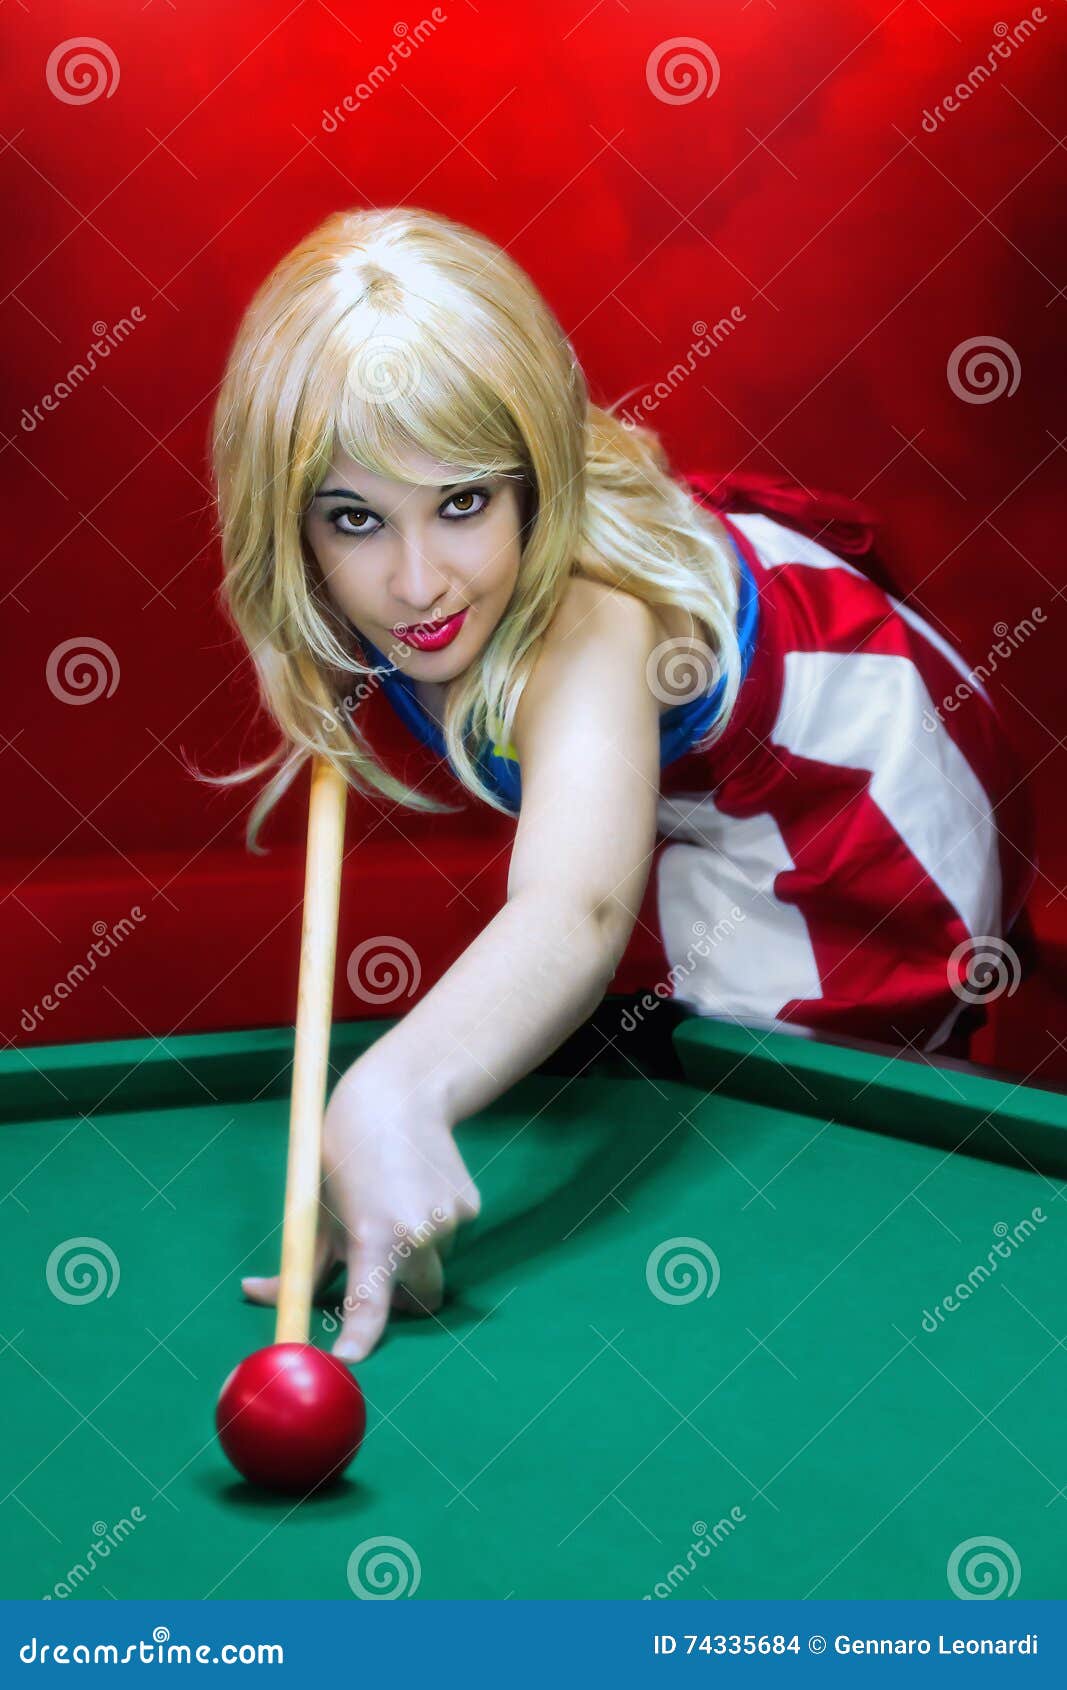 blonde bbw pool table